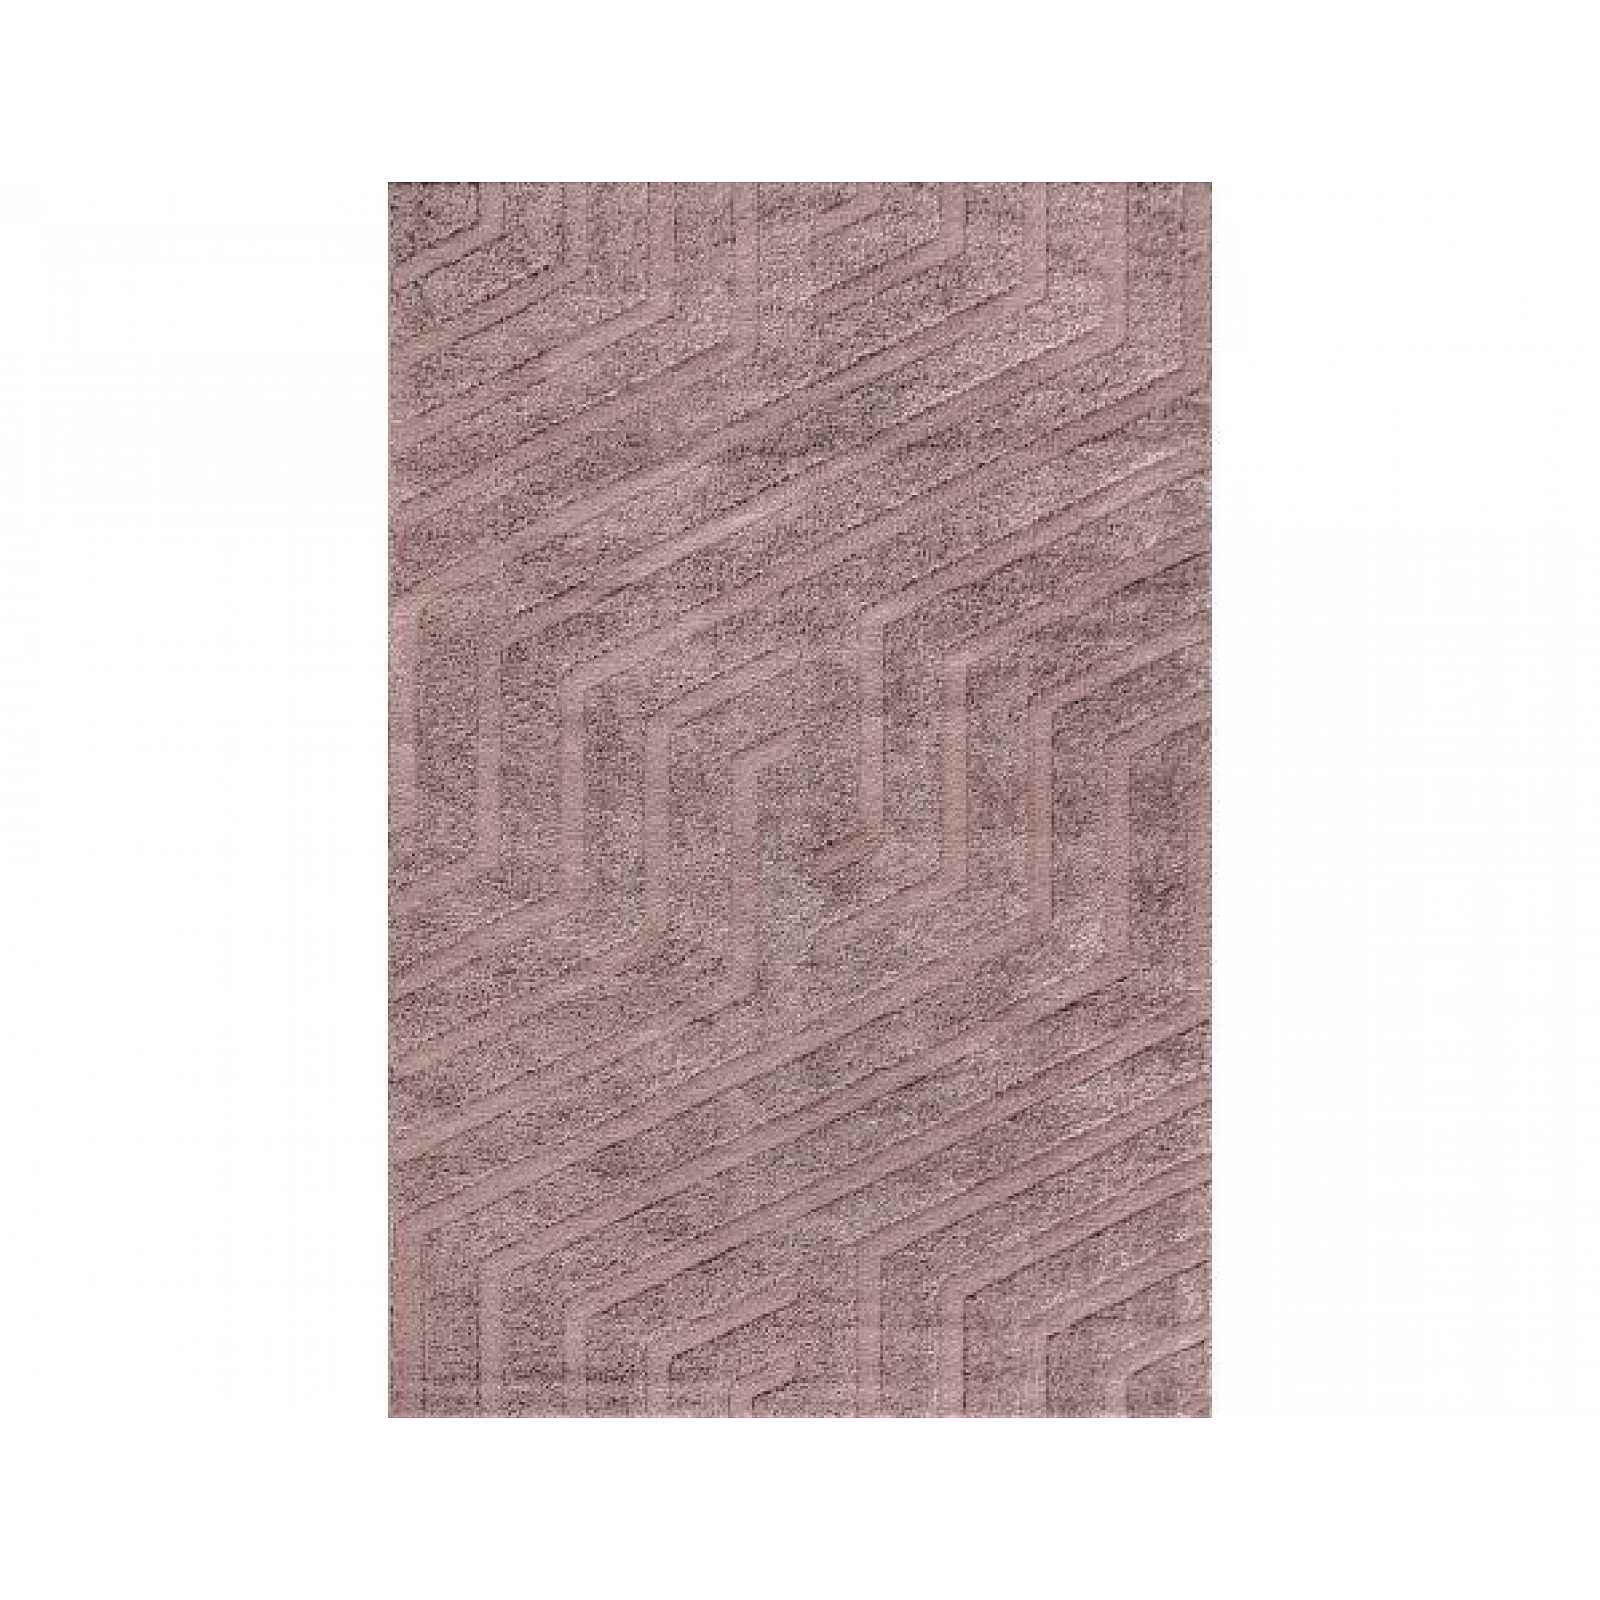 Kusový koberec Mega 6003-70, 180x250 cm